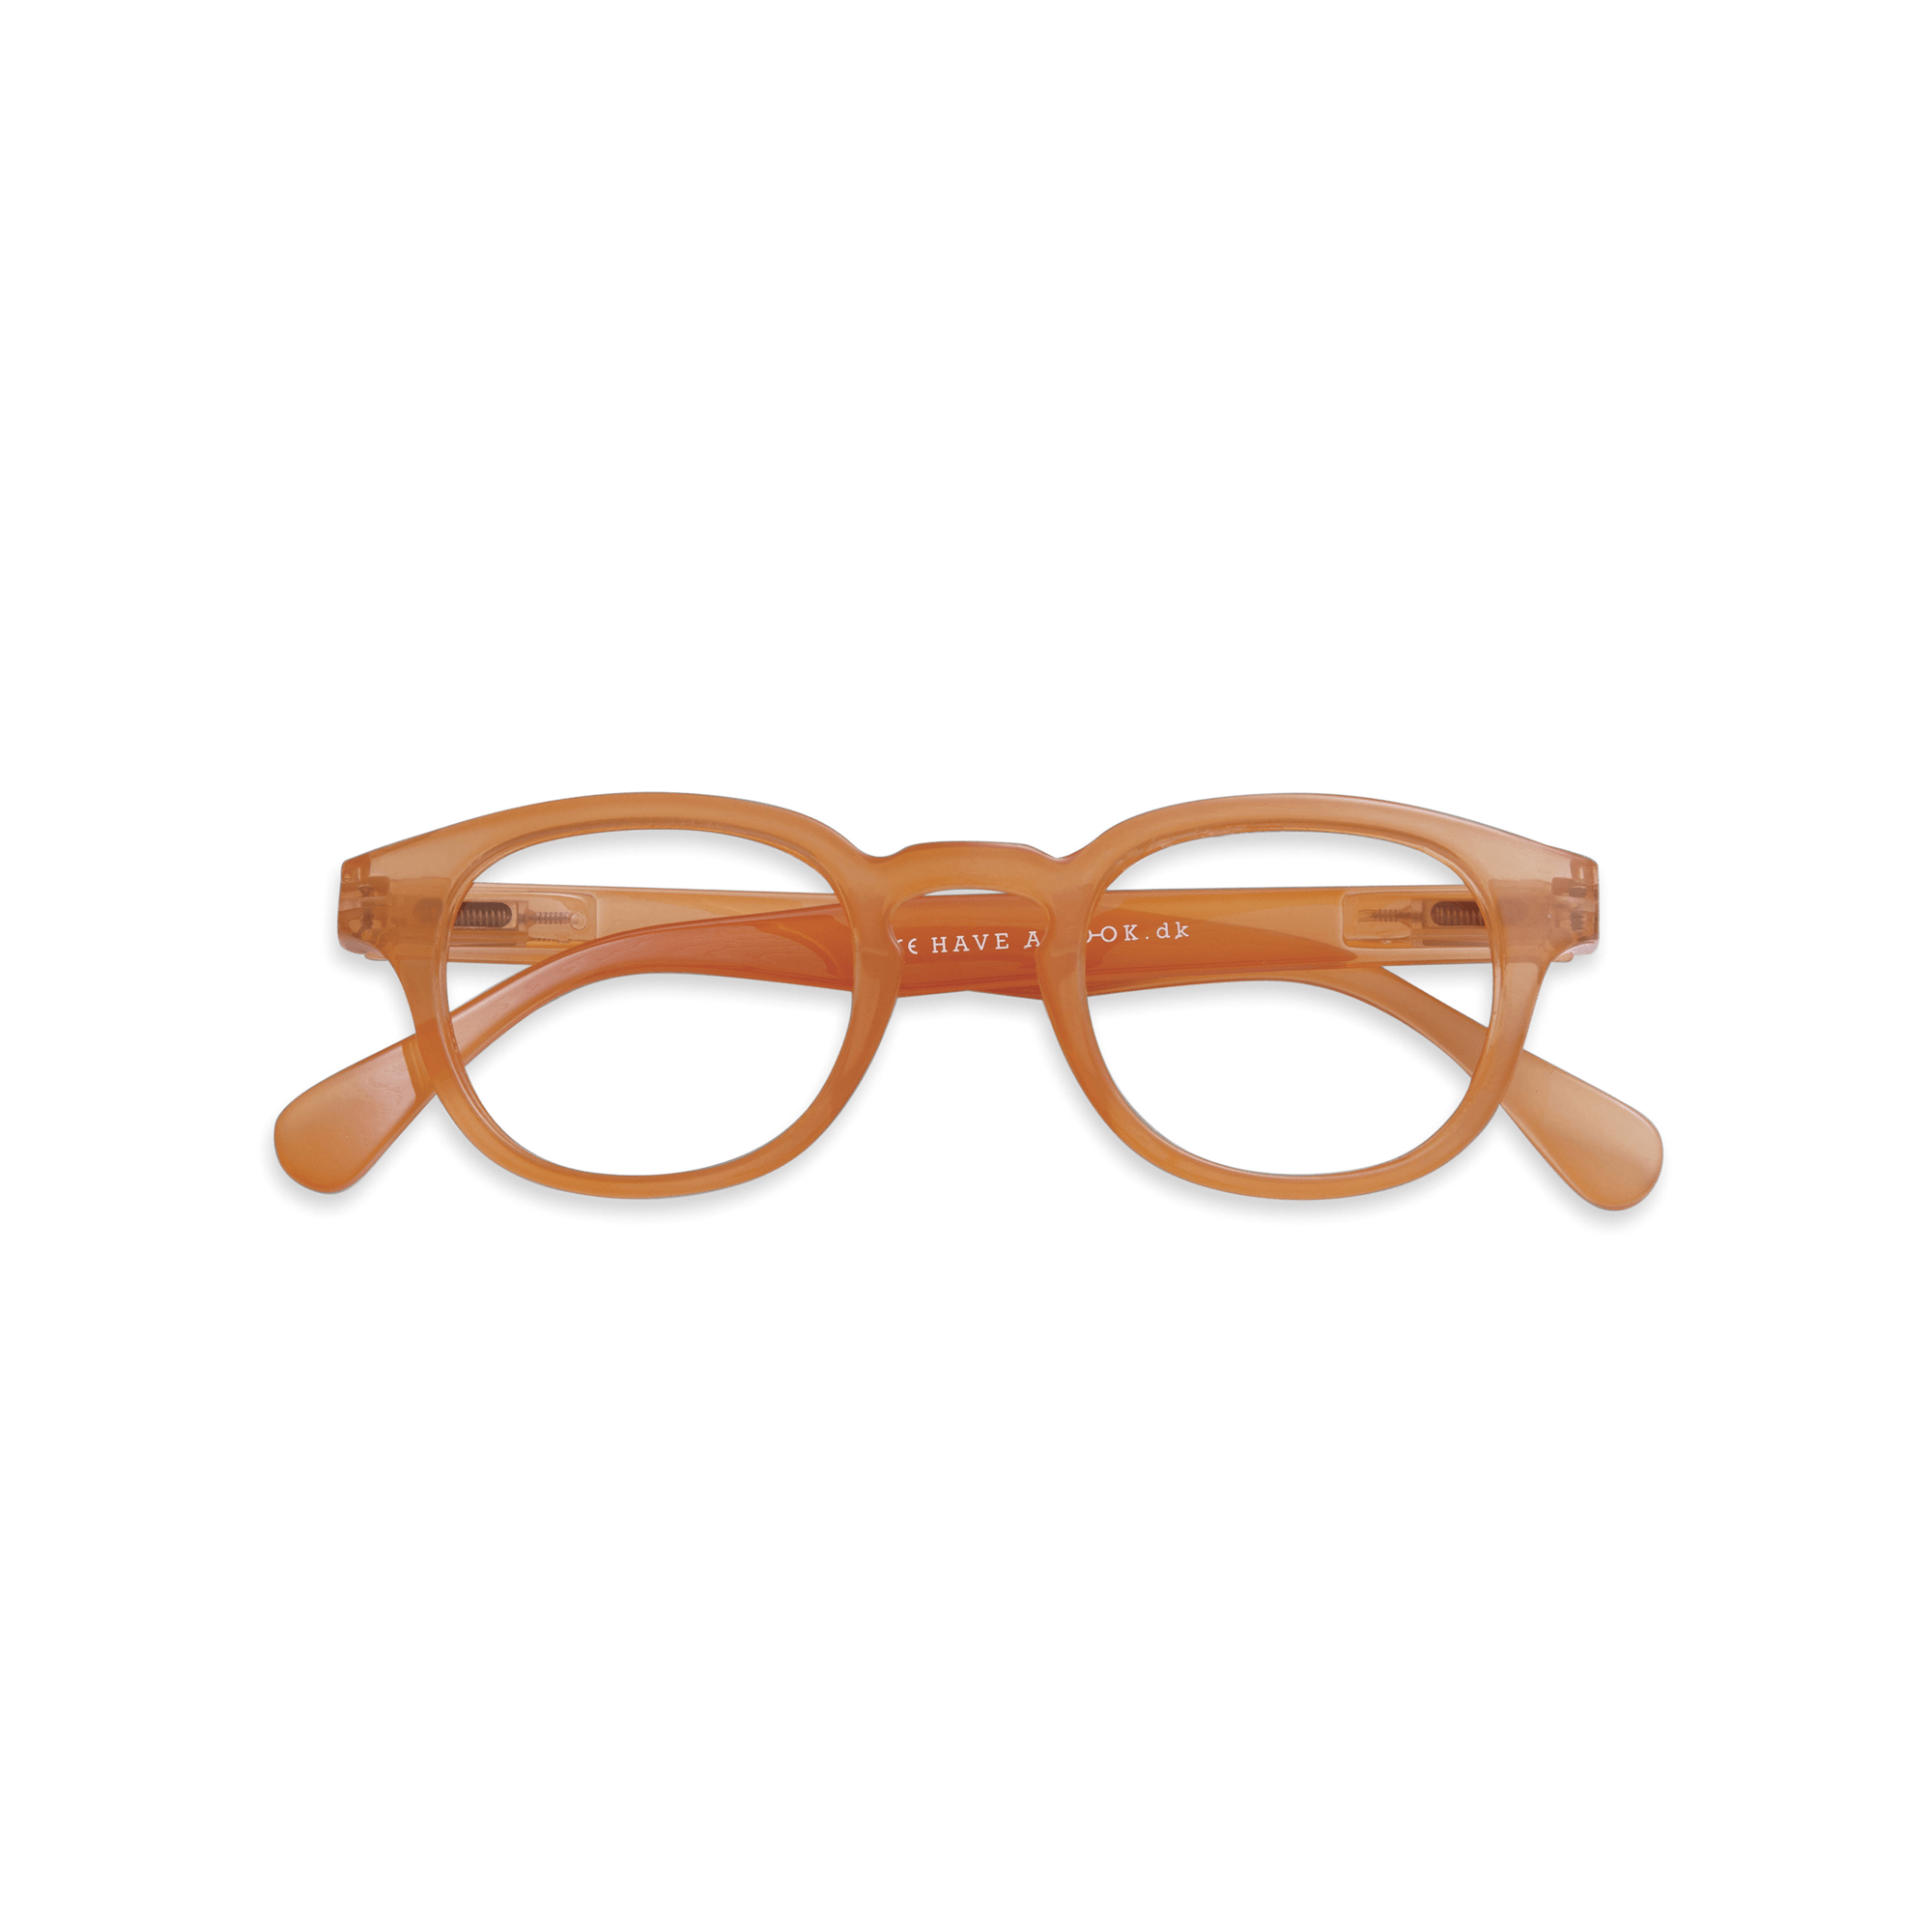 Minus glasses Type C - orange